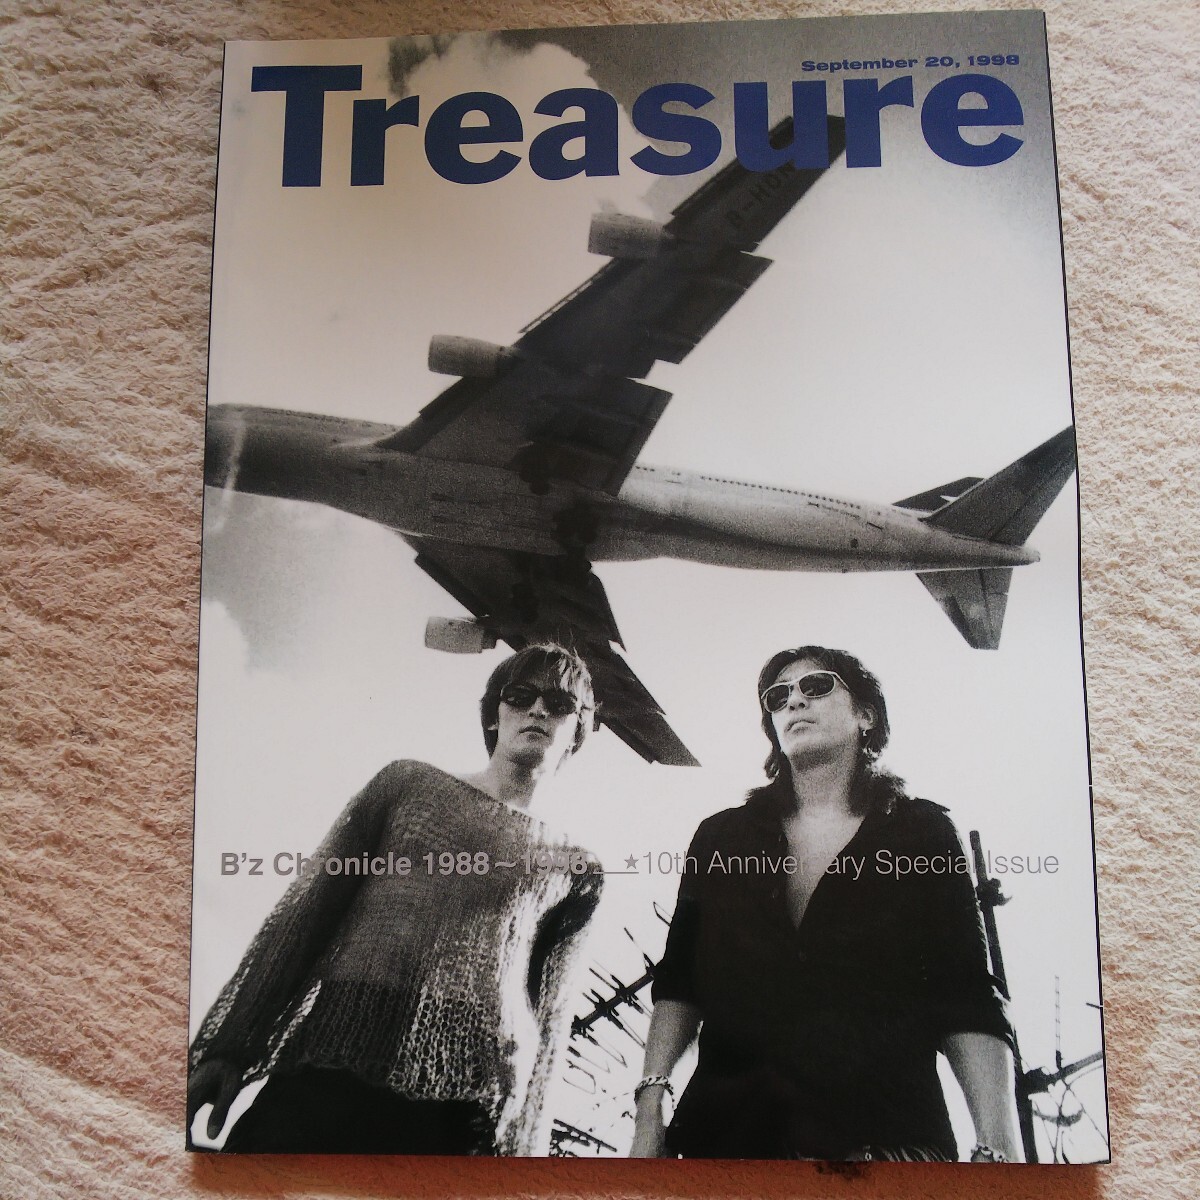 【非売品】B'z The Book Treasure CDケース付_画像2